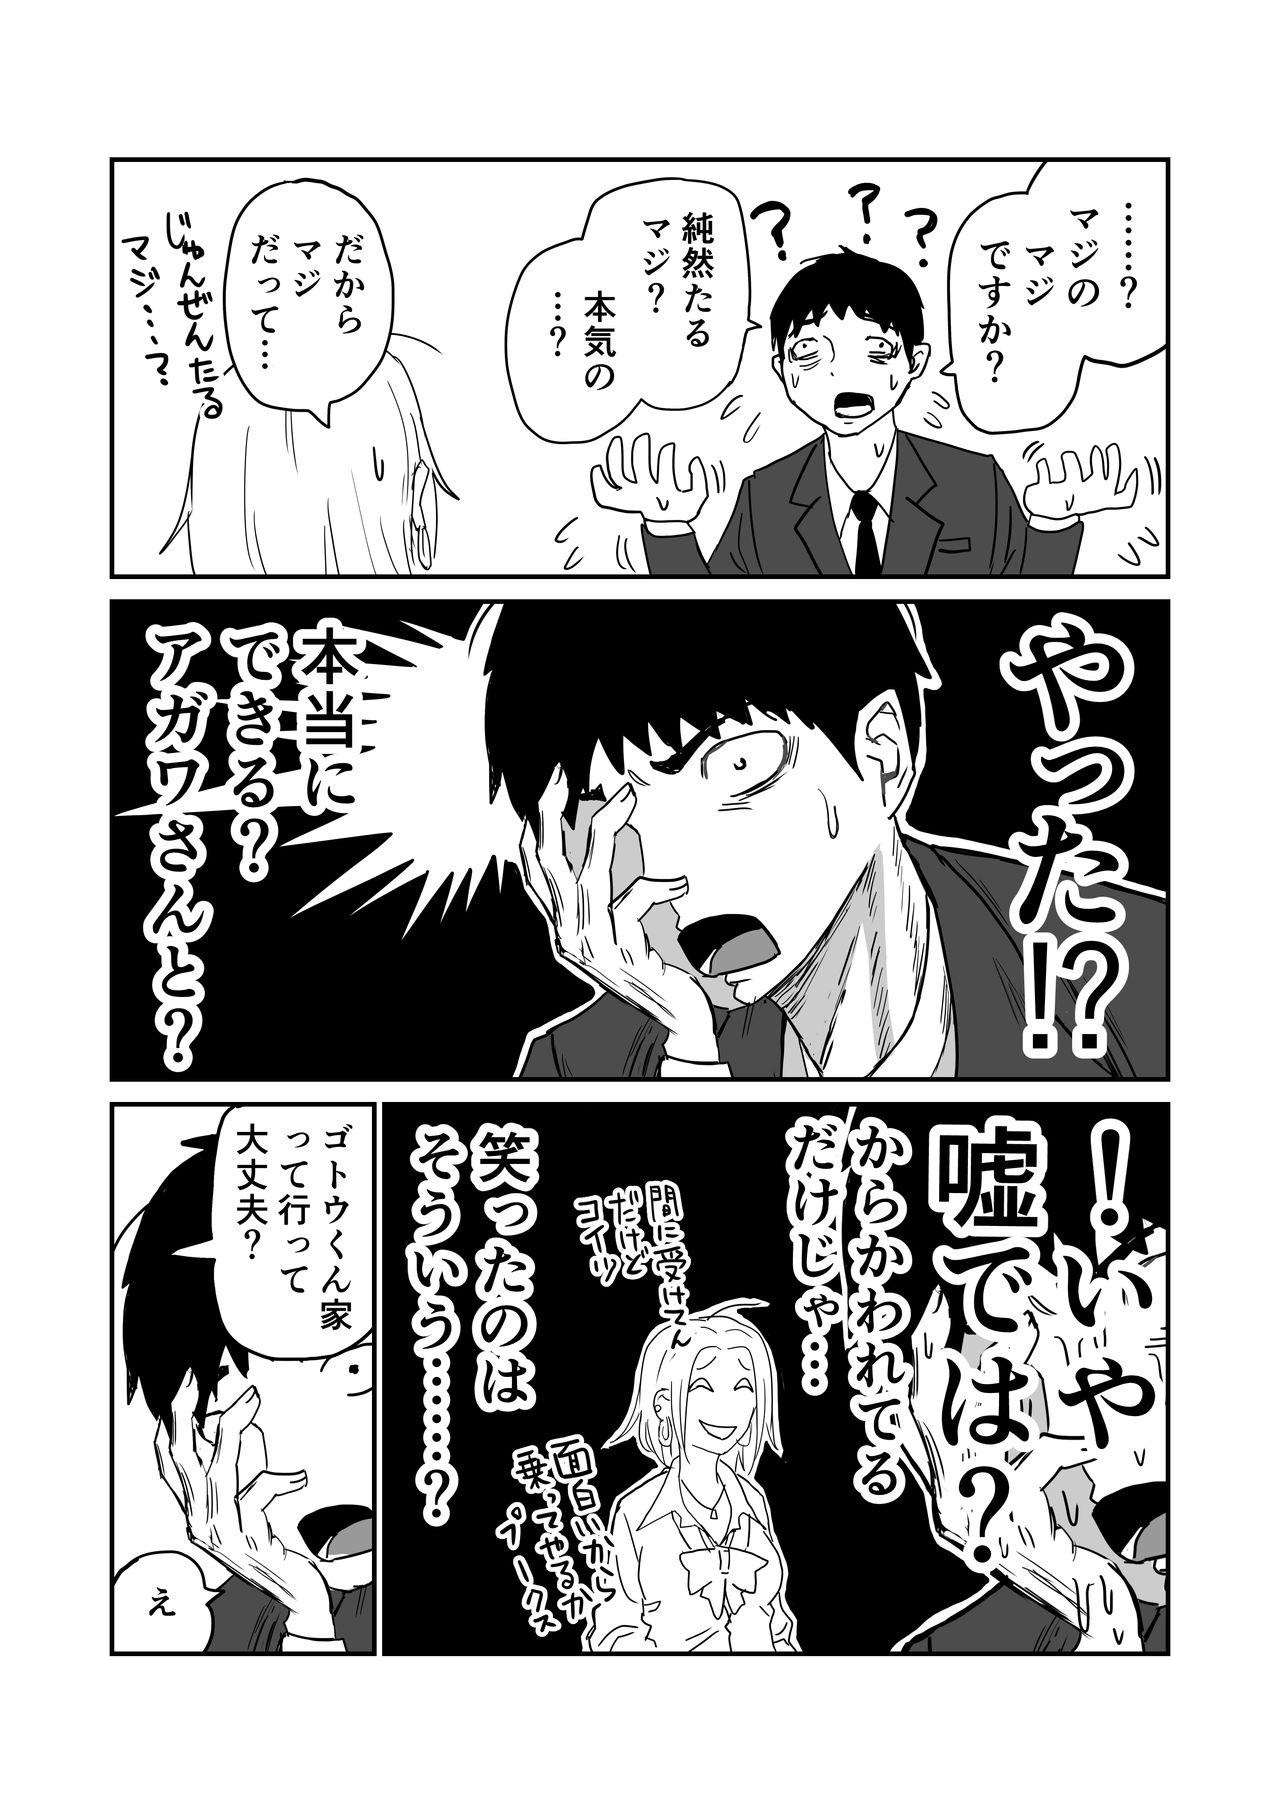 女子高生のエロ漫画 40